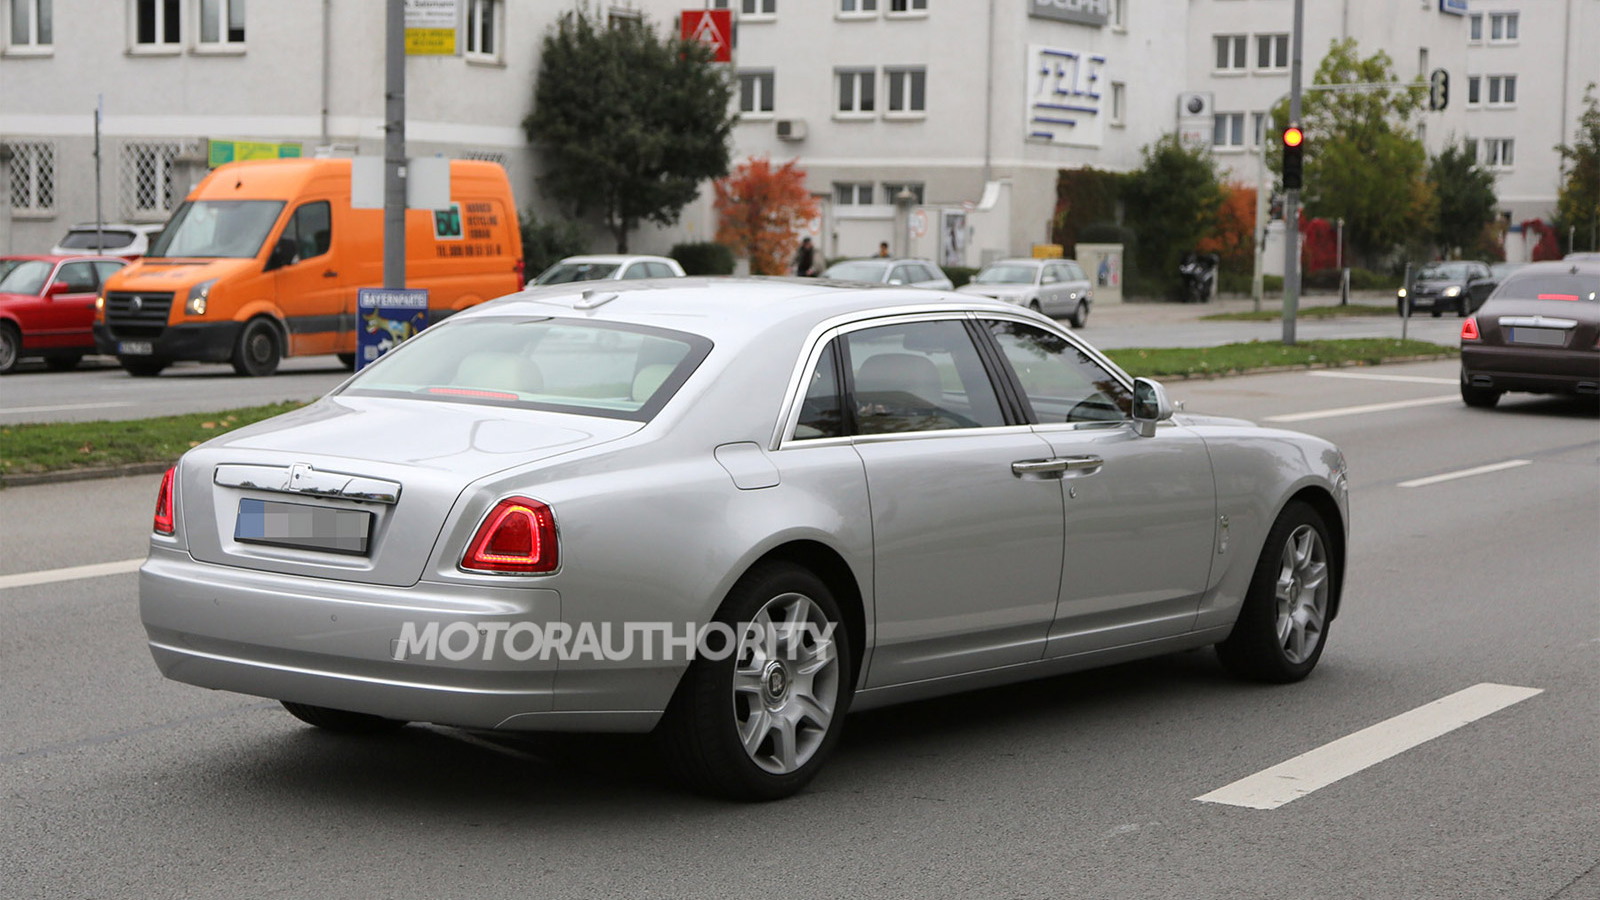 2015 Rolls-Royce Ghost facelift spy shots